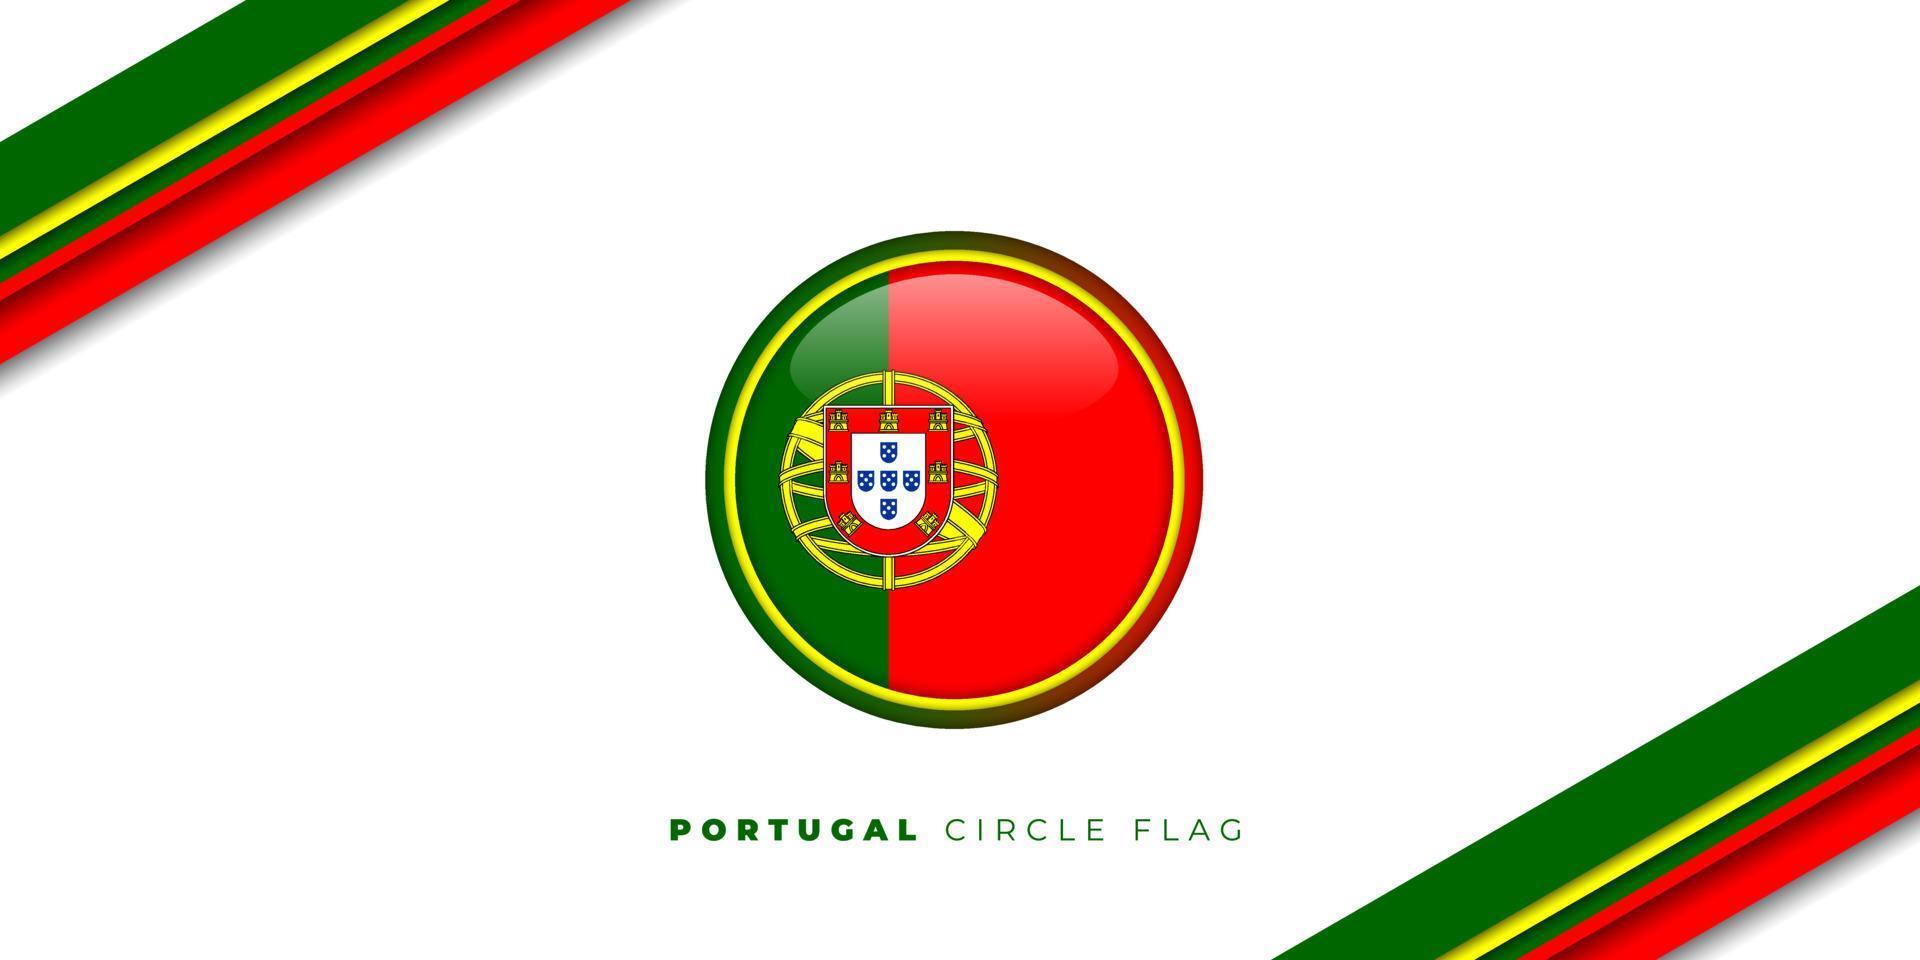 Cờ Bồ Đào Nha không chỉ là biểu tượng của quốc gia mà còn là một kiệt tác về mỹ thuật. Màu sắc tươi sáng của nó cùng với cấu trúc độc đáo sẽ khiến bạn hài lòng và đầy cảm hứng. Nhanh tay xem để tìm hiểu thêm về cờ Bồ Đào Nha!